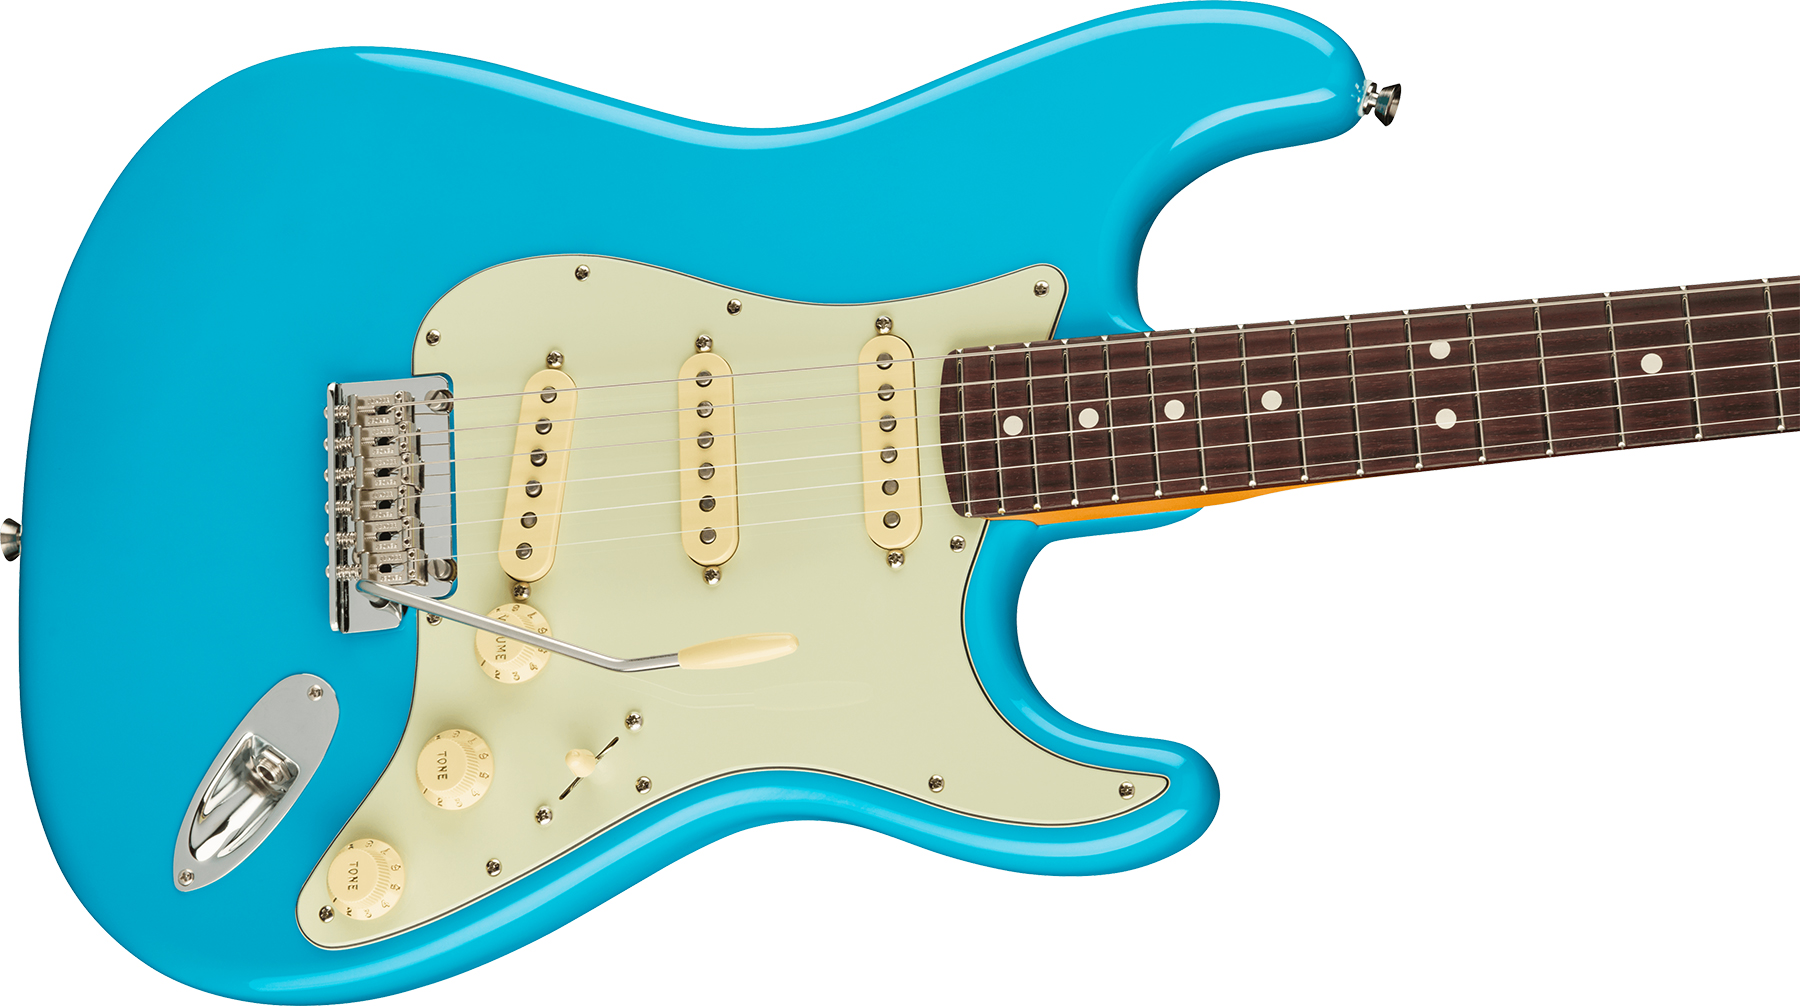 Fender Strat American Professional Ii Lh Gaucher Usa Rw - Miami Blue - Linkshandige elektrische gitaar - Variation 2